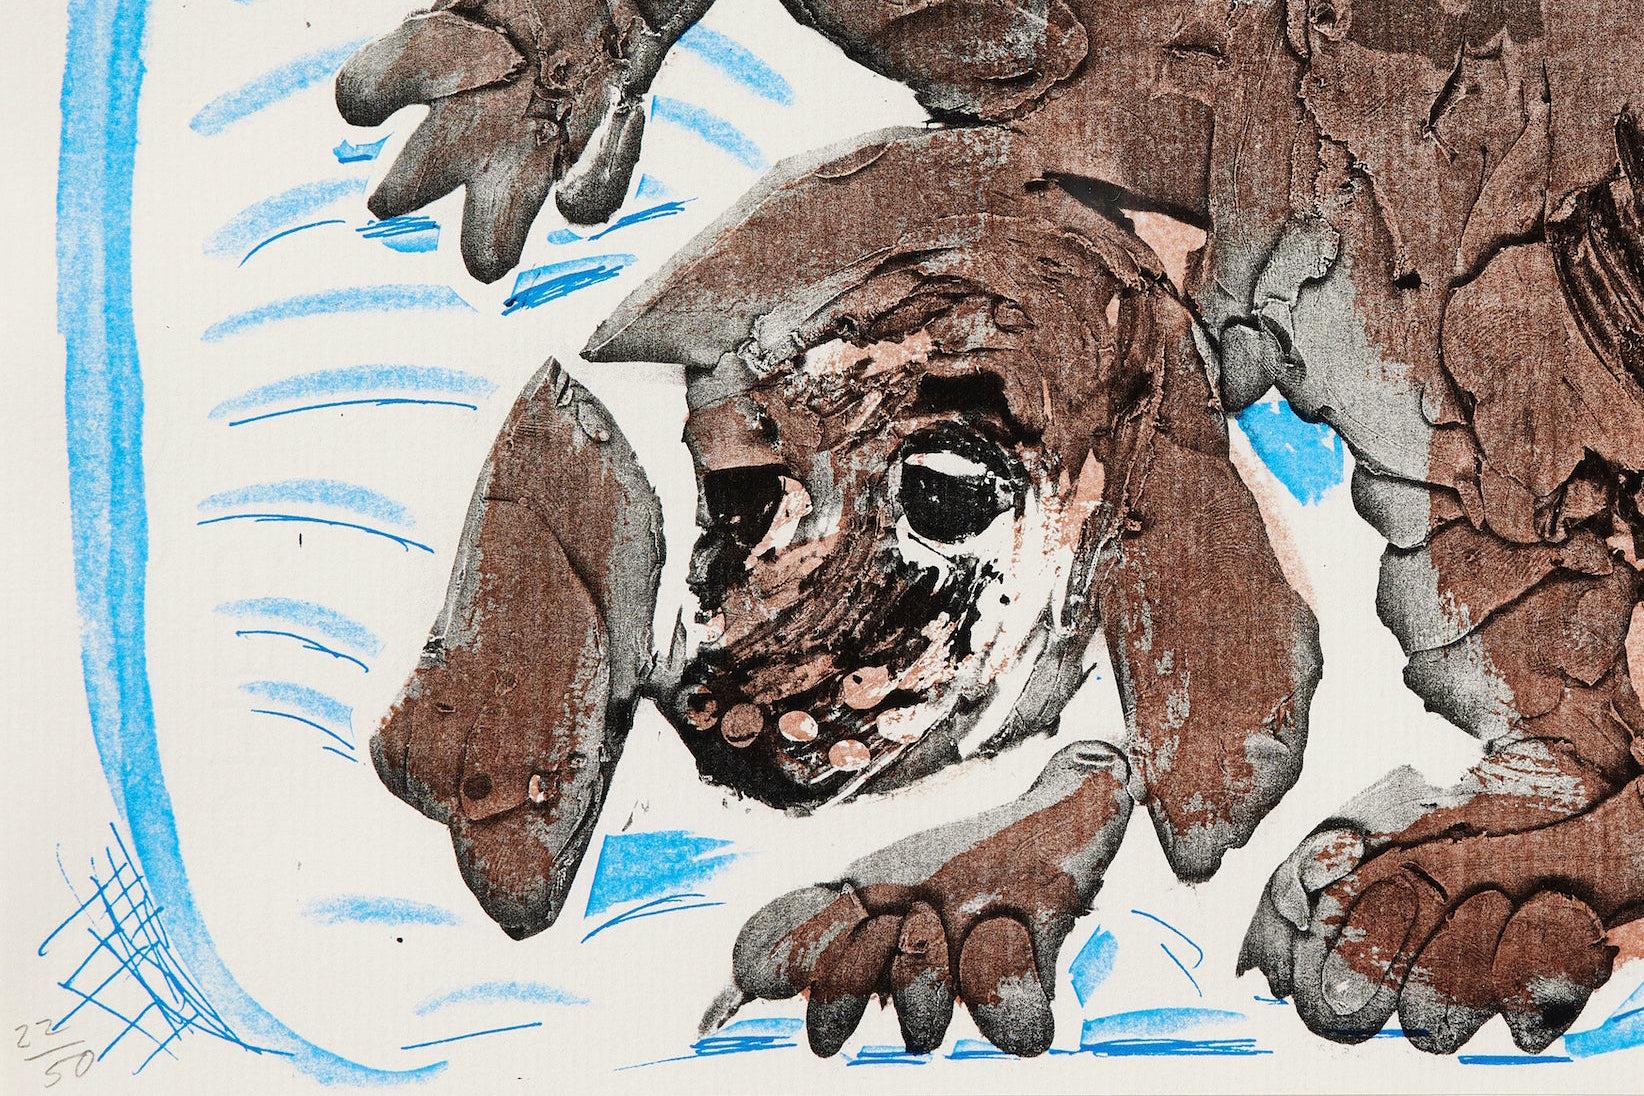 Stanley dans un panier, octobre 1986, 1986
David Hockney

Tirage artisanal exécuté sur une photocopieuse couleur de bureau sur papier chiffon Arches
Signé, daté et numéroté 21 de l'édition de 50
Avec la marque de découpe de l'artiste
Publié par